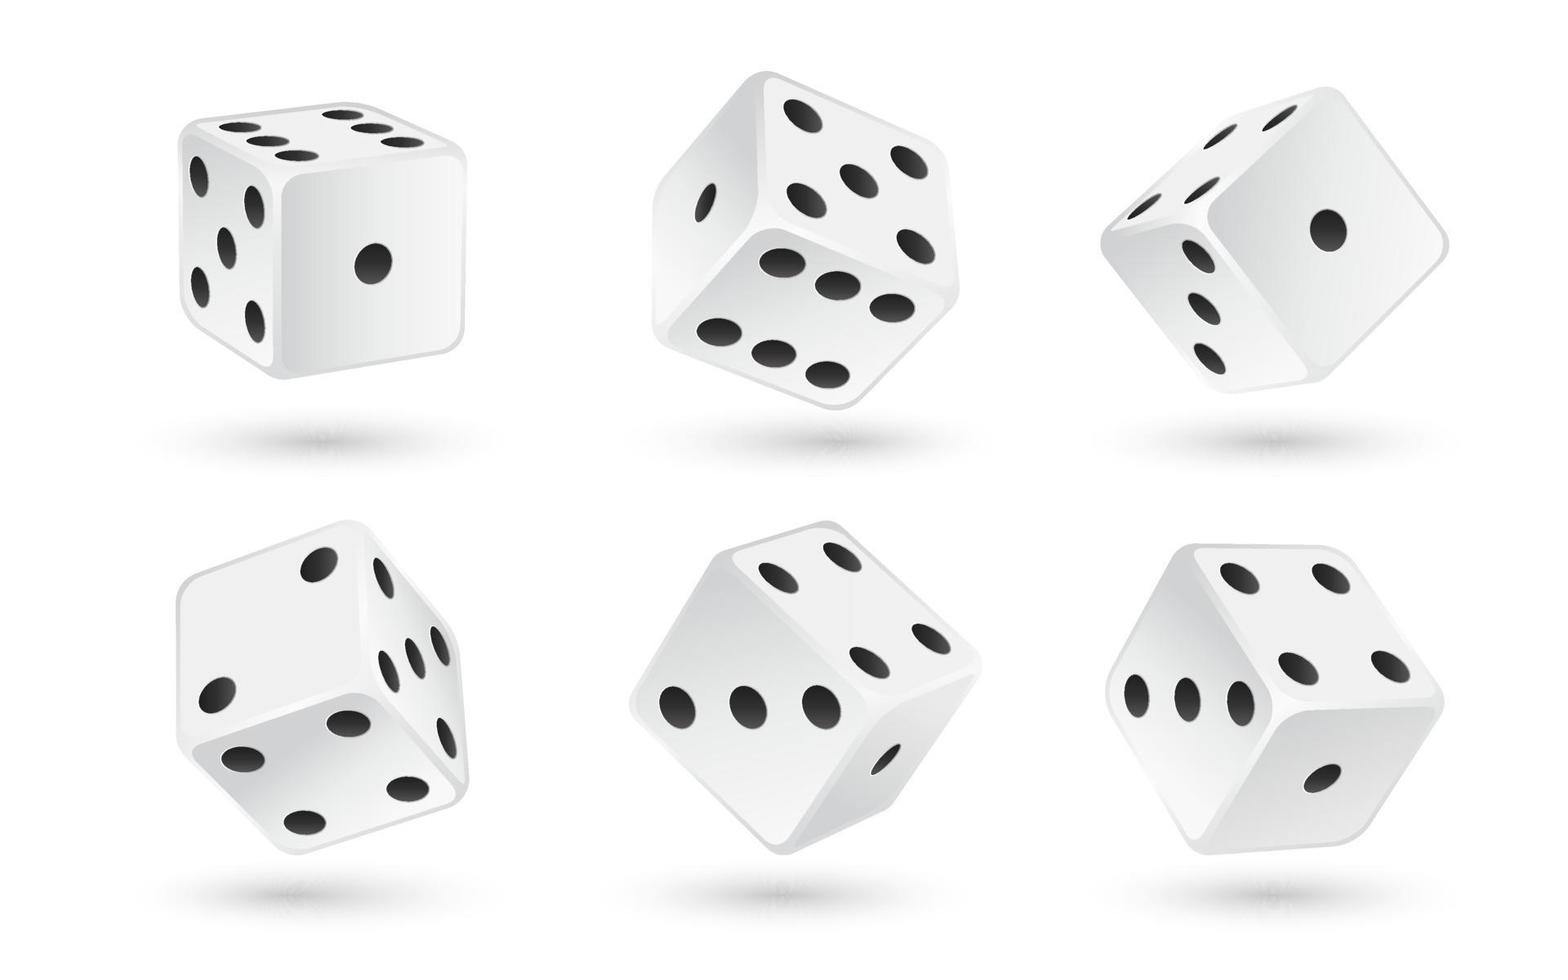 kasino realistisk tärningar uppsättning isolerat 3d vektor illustration för hasardspel spel design poker, bordsskiva, styrelse spel. vit kuber med slumpmässig tal av svart prickar eller pips och avrundad kanter